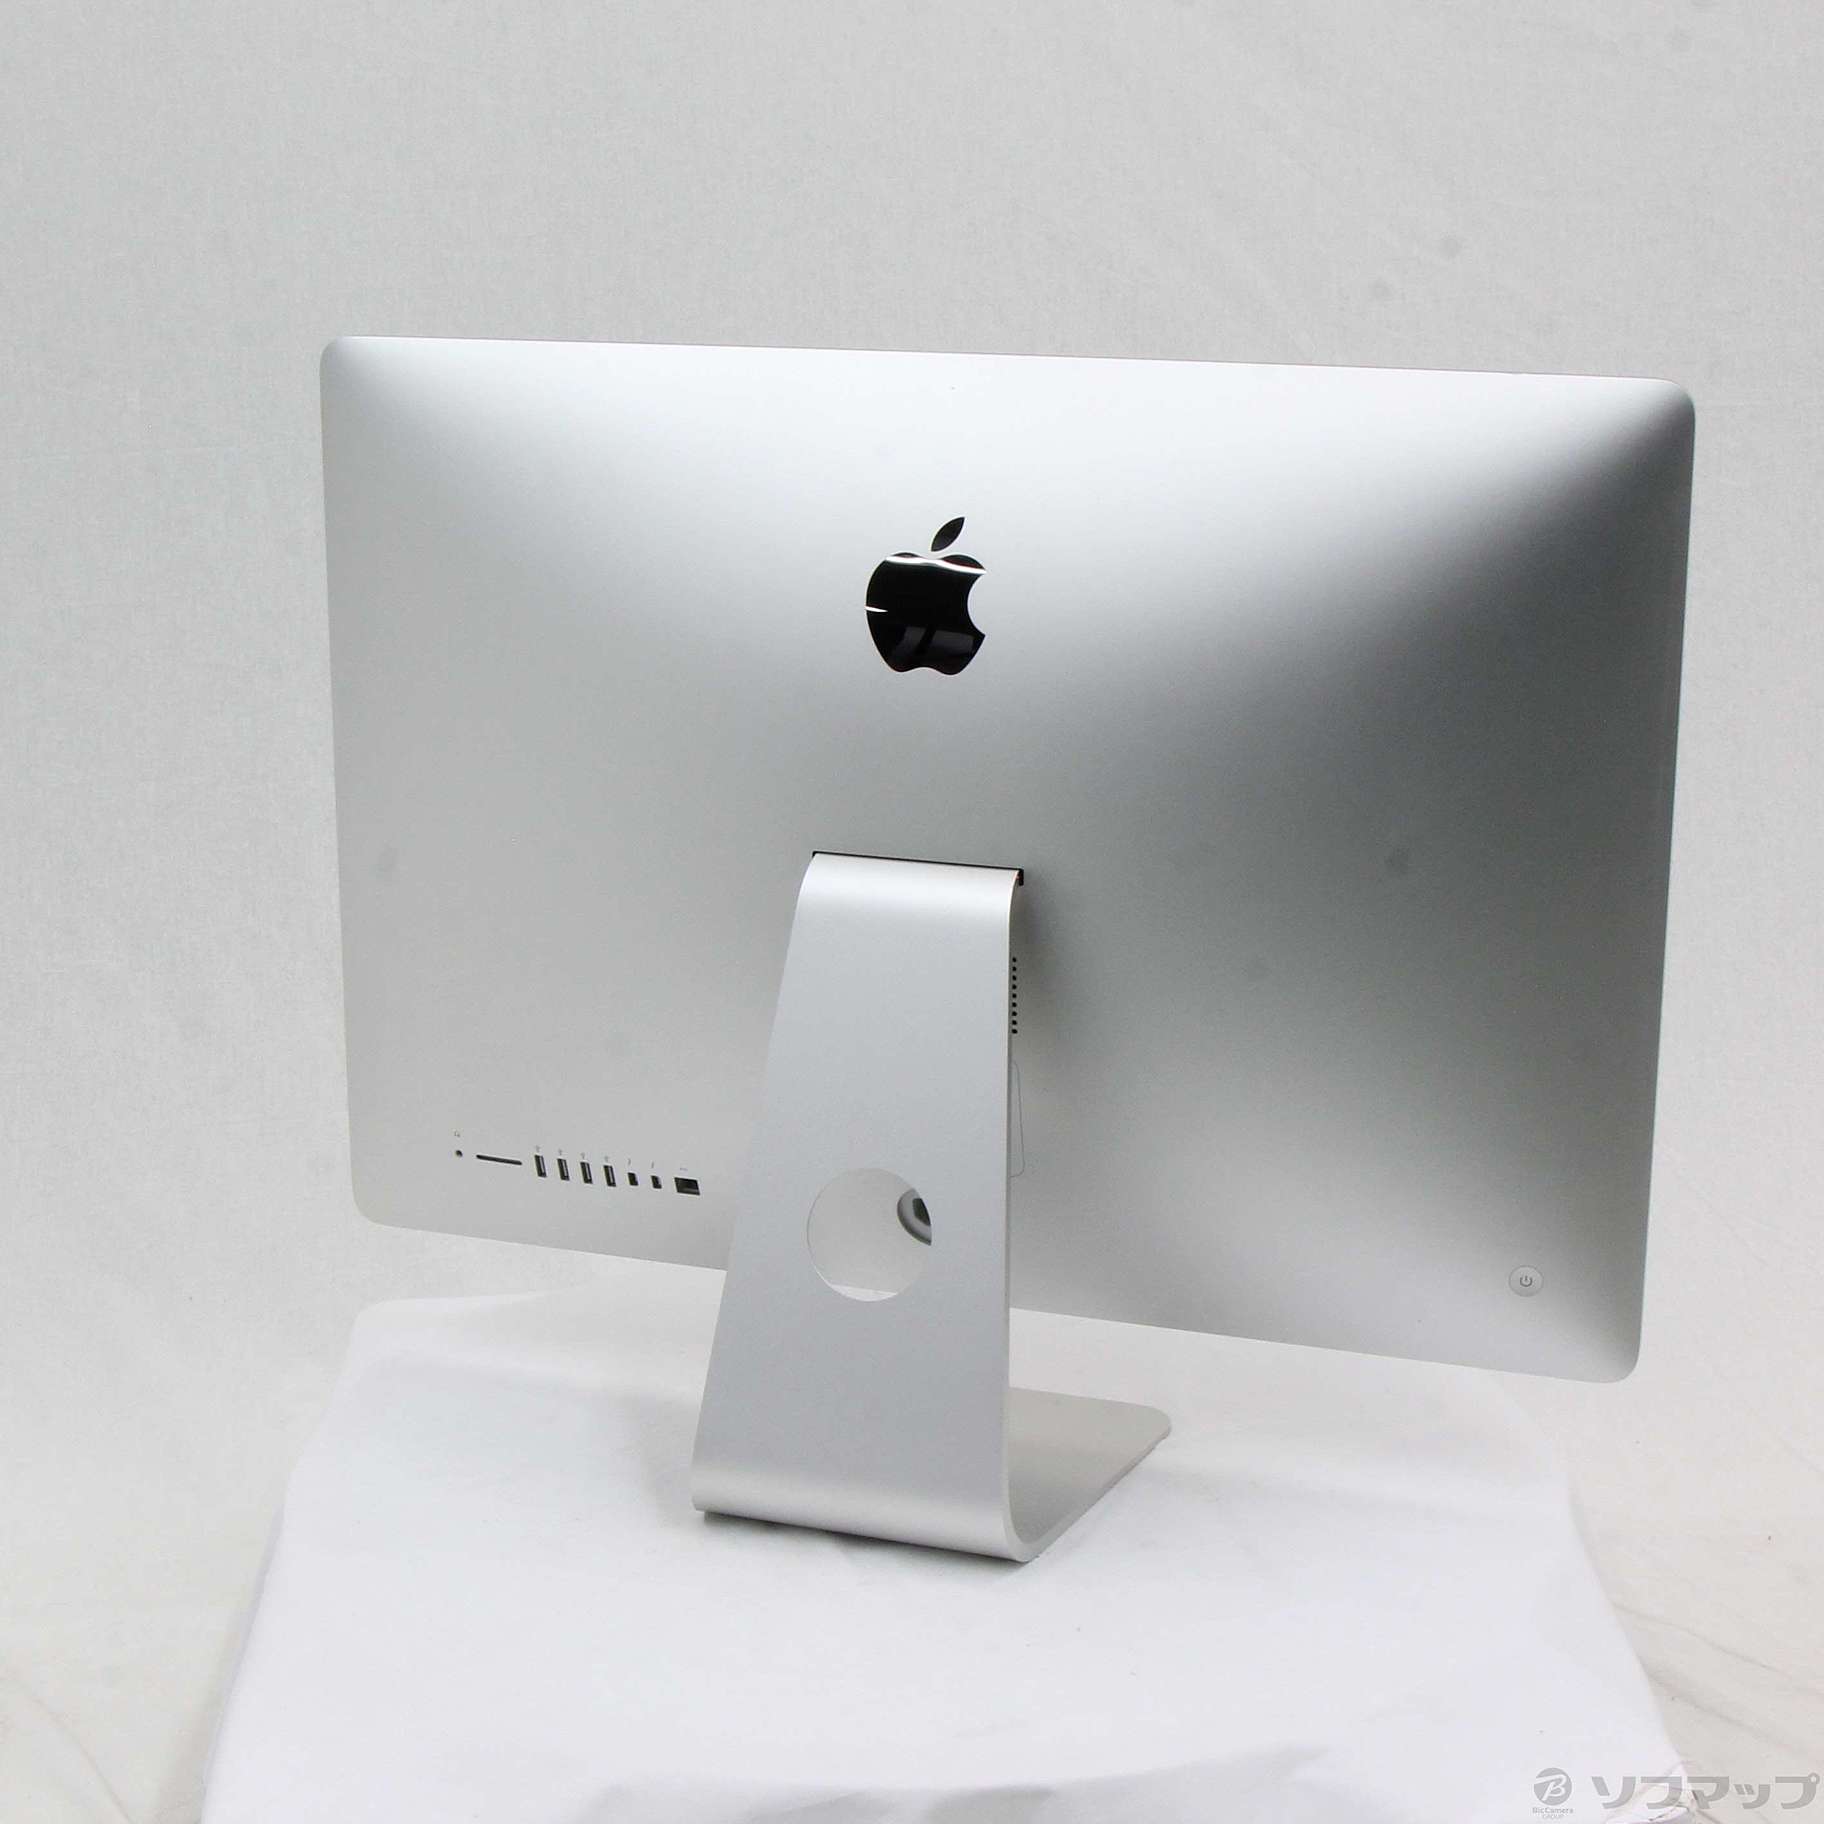 オンラインストア割 APPLE iMac IMAC MD095J/A デスクトップ型PC